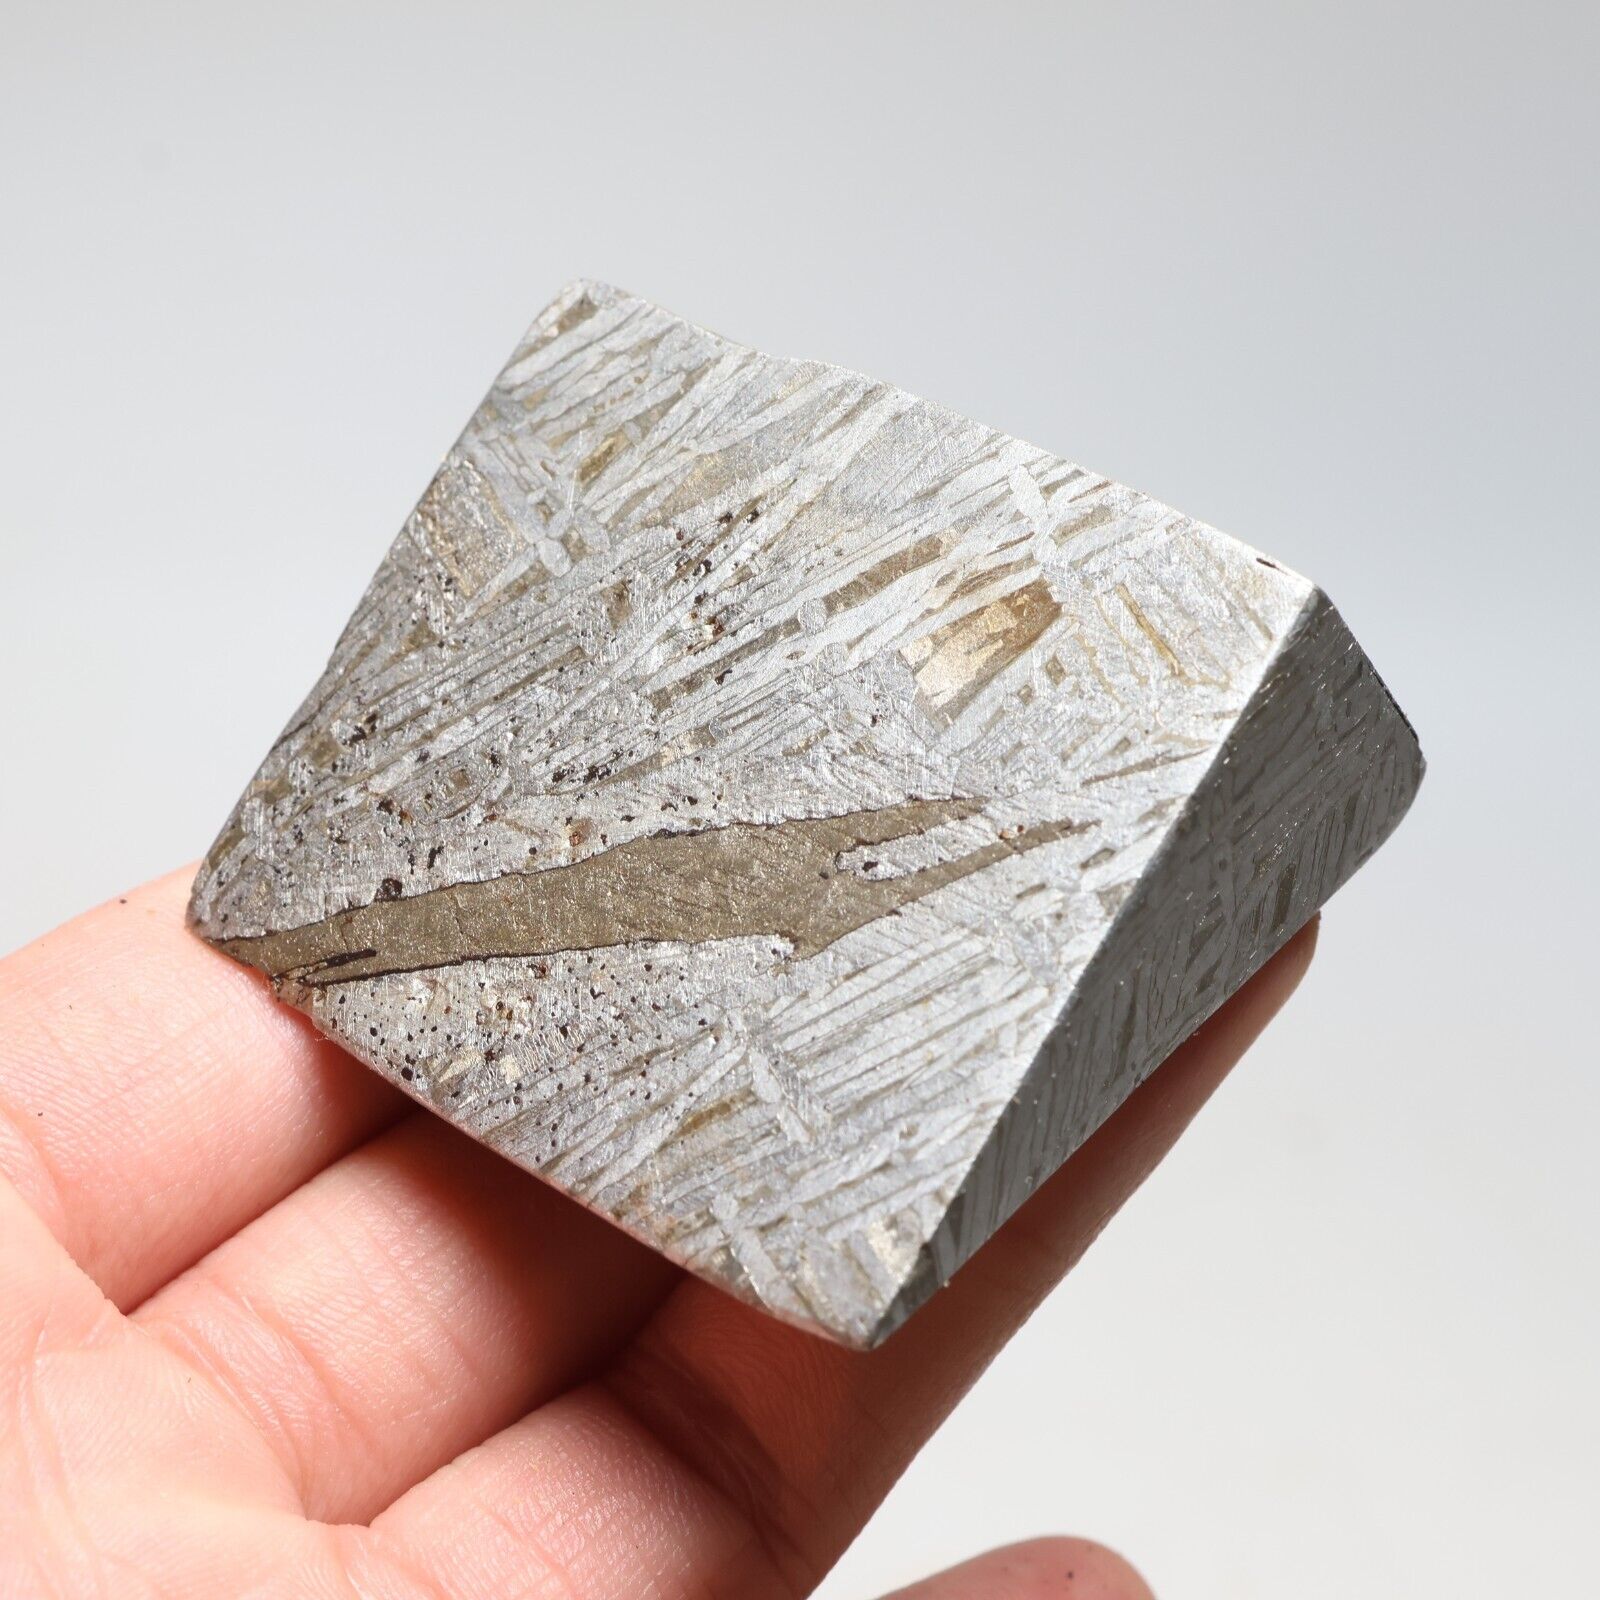 209g  Muonionalusta meteorite part slice C7430